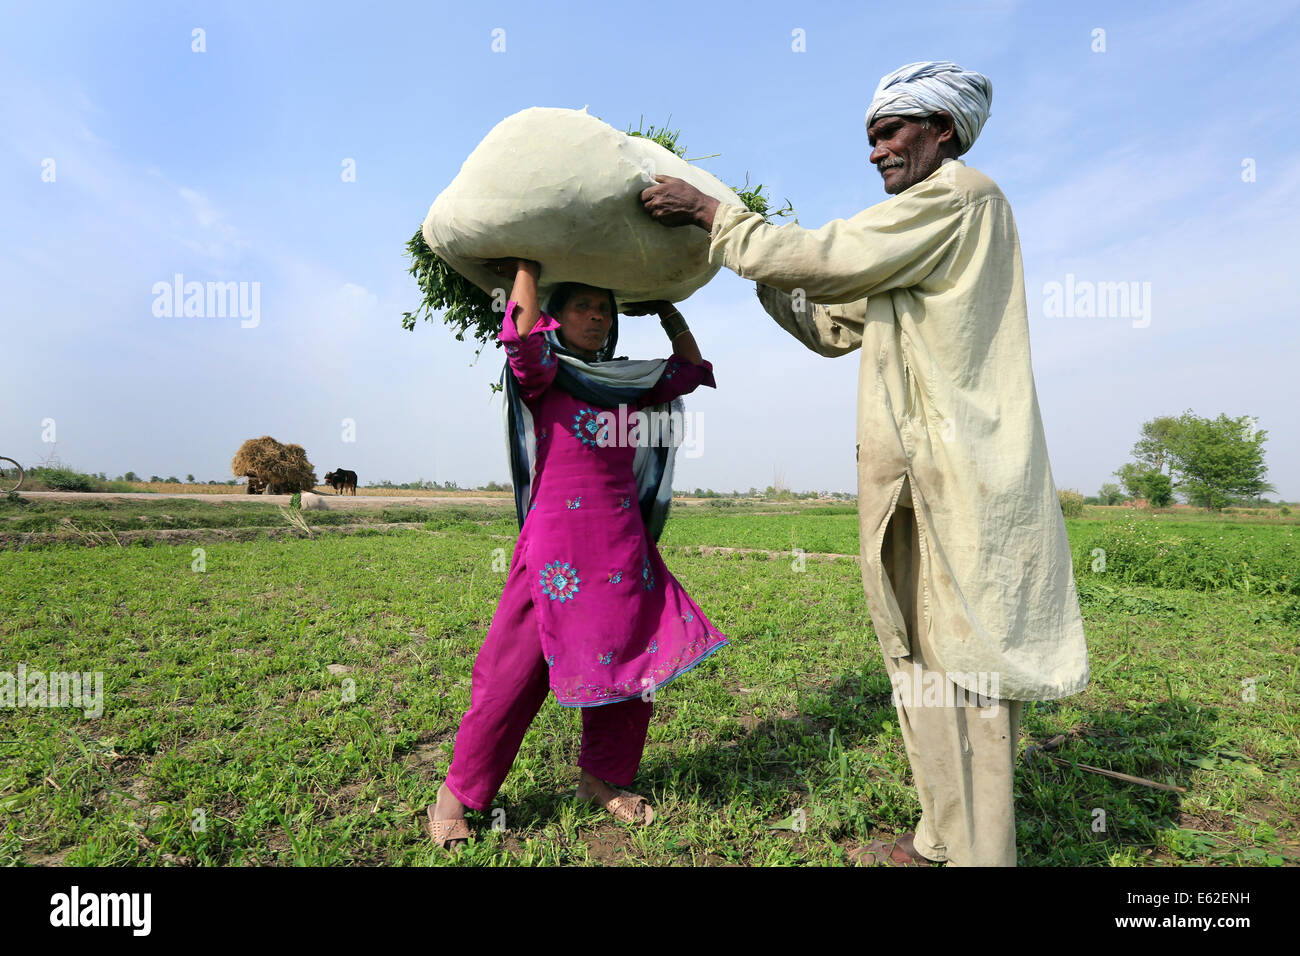 Les agriculteurs transportent un sac de trèfle récolté pour nourrir leurs animaux, près de l'Khuspur, village de la Province de Punjab, Pakistan Banque D'Images